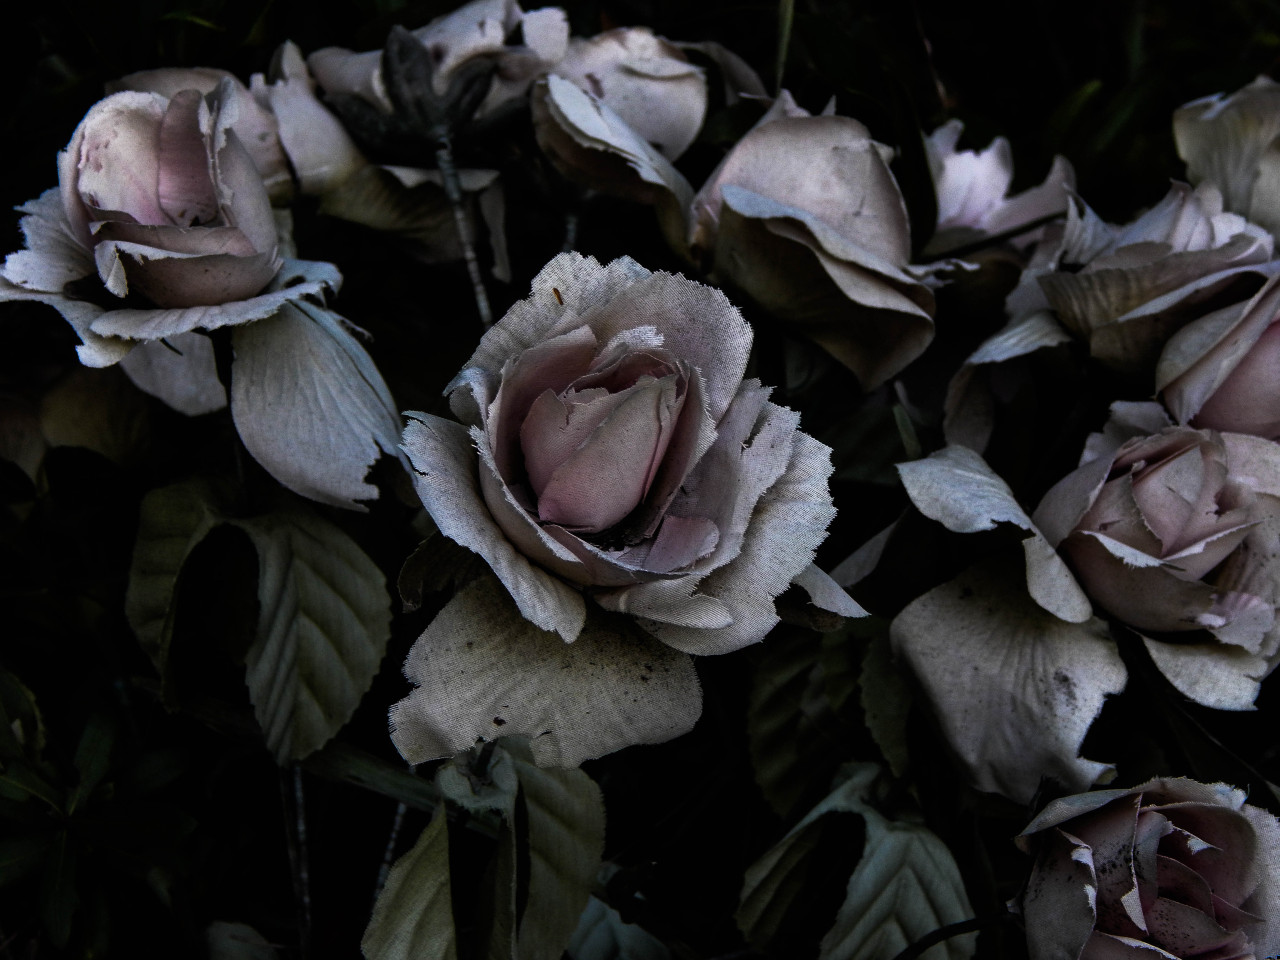 à¸œà¸¥à¸à¸²à¸£à¸„à¹‰à¸™à¸«à¸²à¸£à¸¹à¸›à¸ à¸²à¸žà¸ªà¸³à¸«à¸£à¸±à¸š gothic rose aesthetic